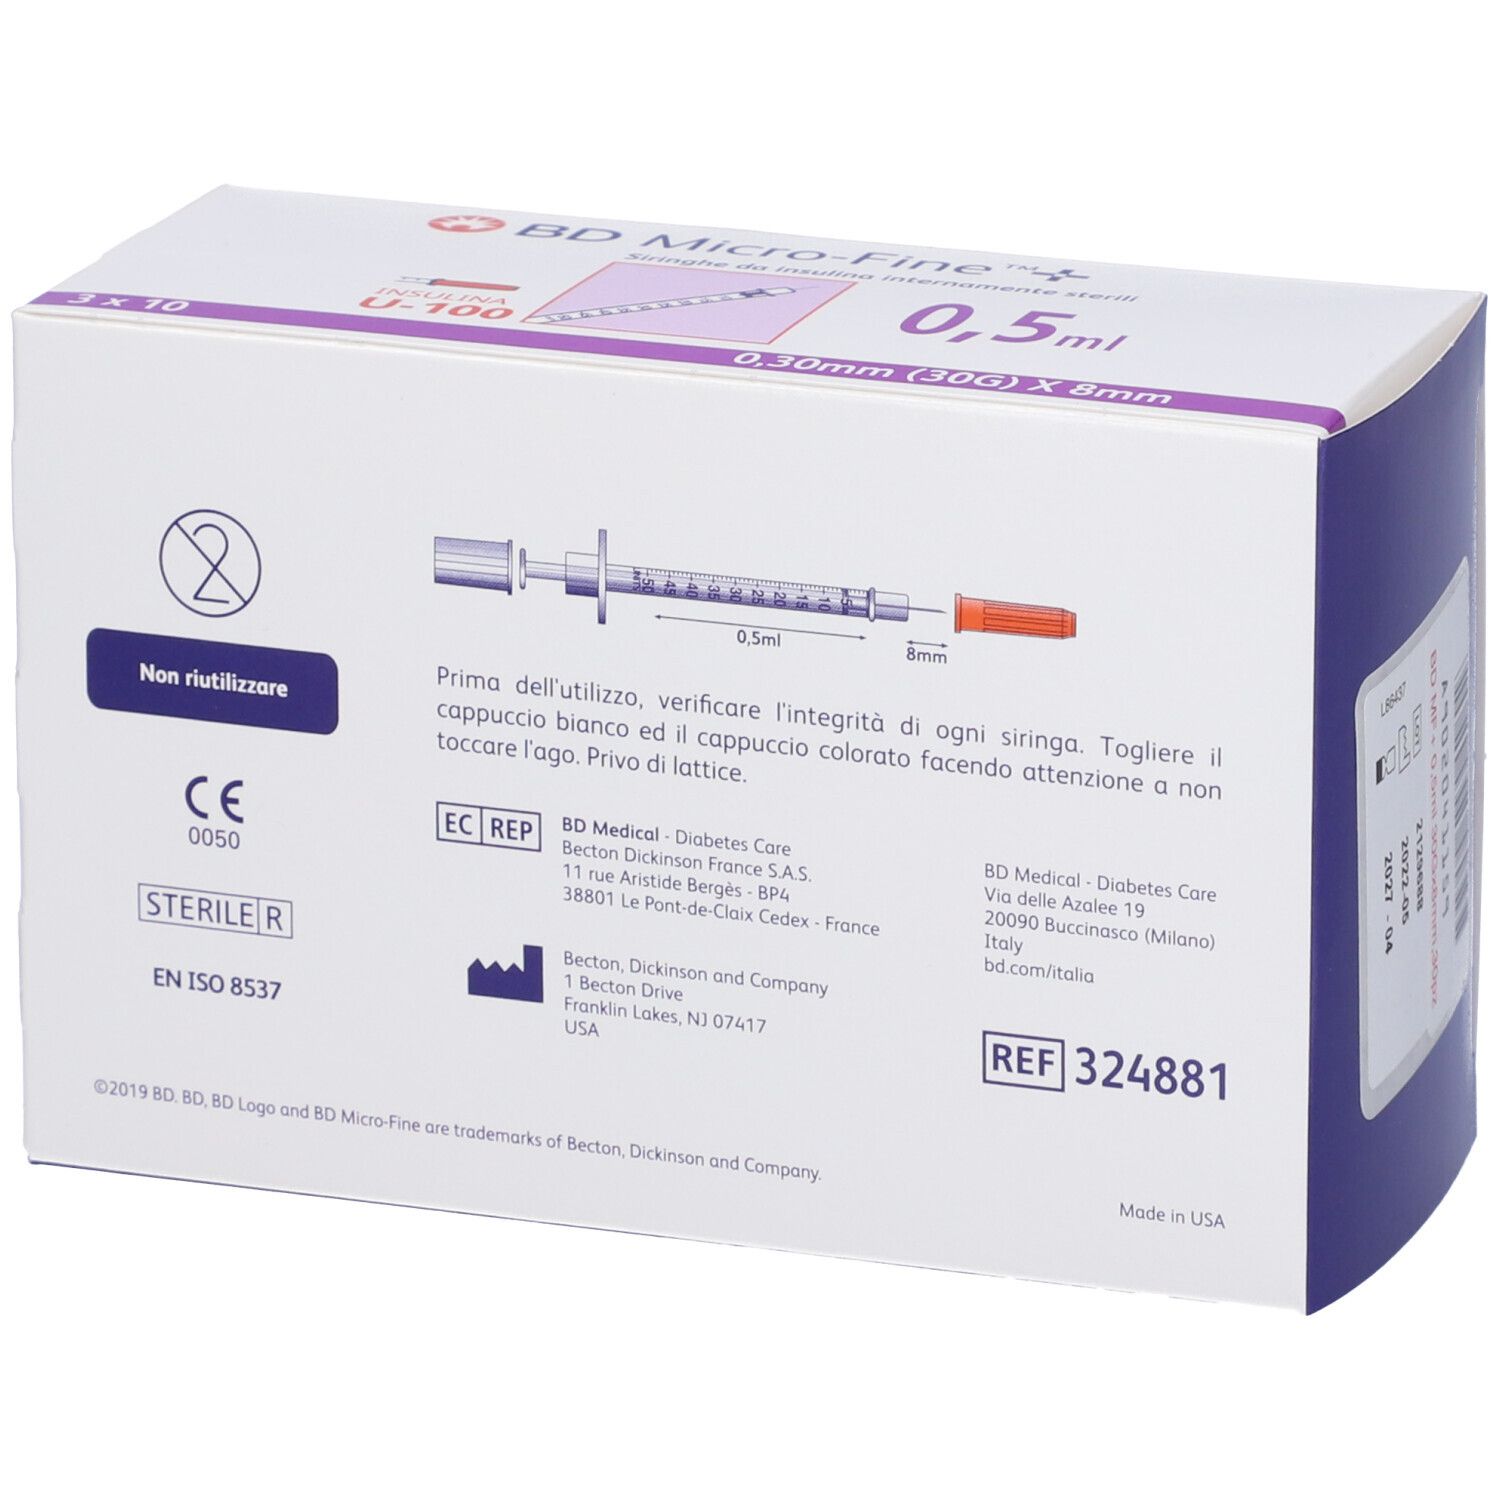 BD Micro-Fine™+ Siringhe per insulina 0,5 ml 0,30 mm (30G) x 8 mm